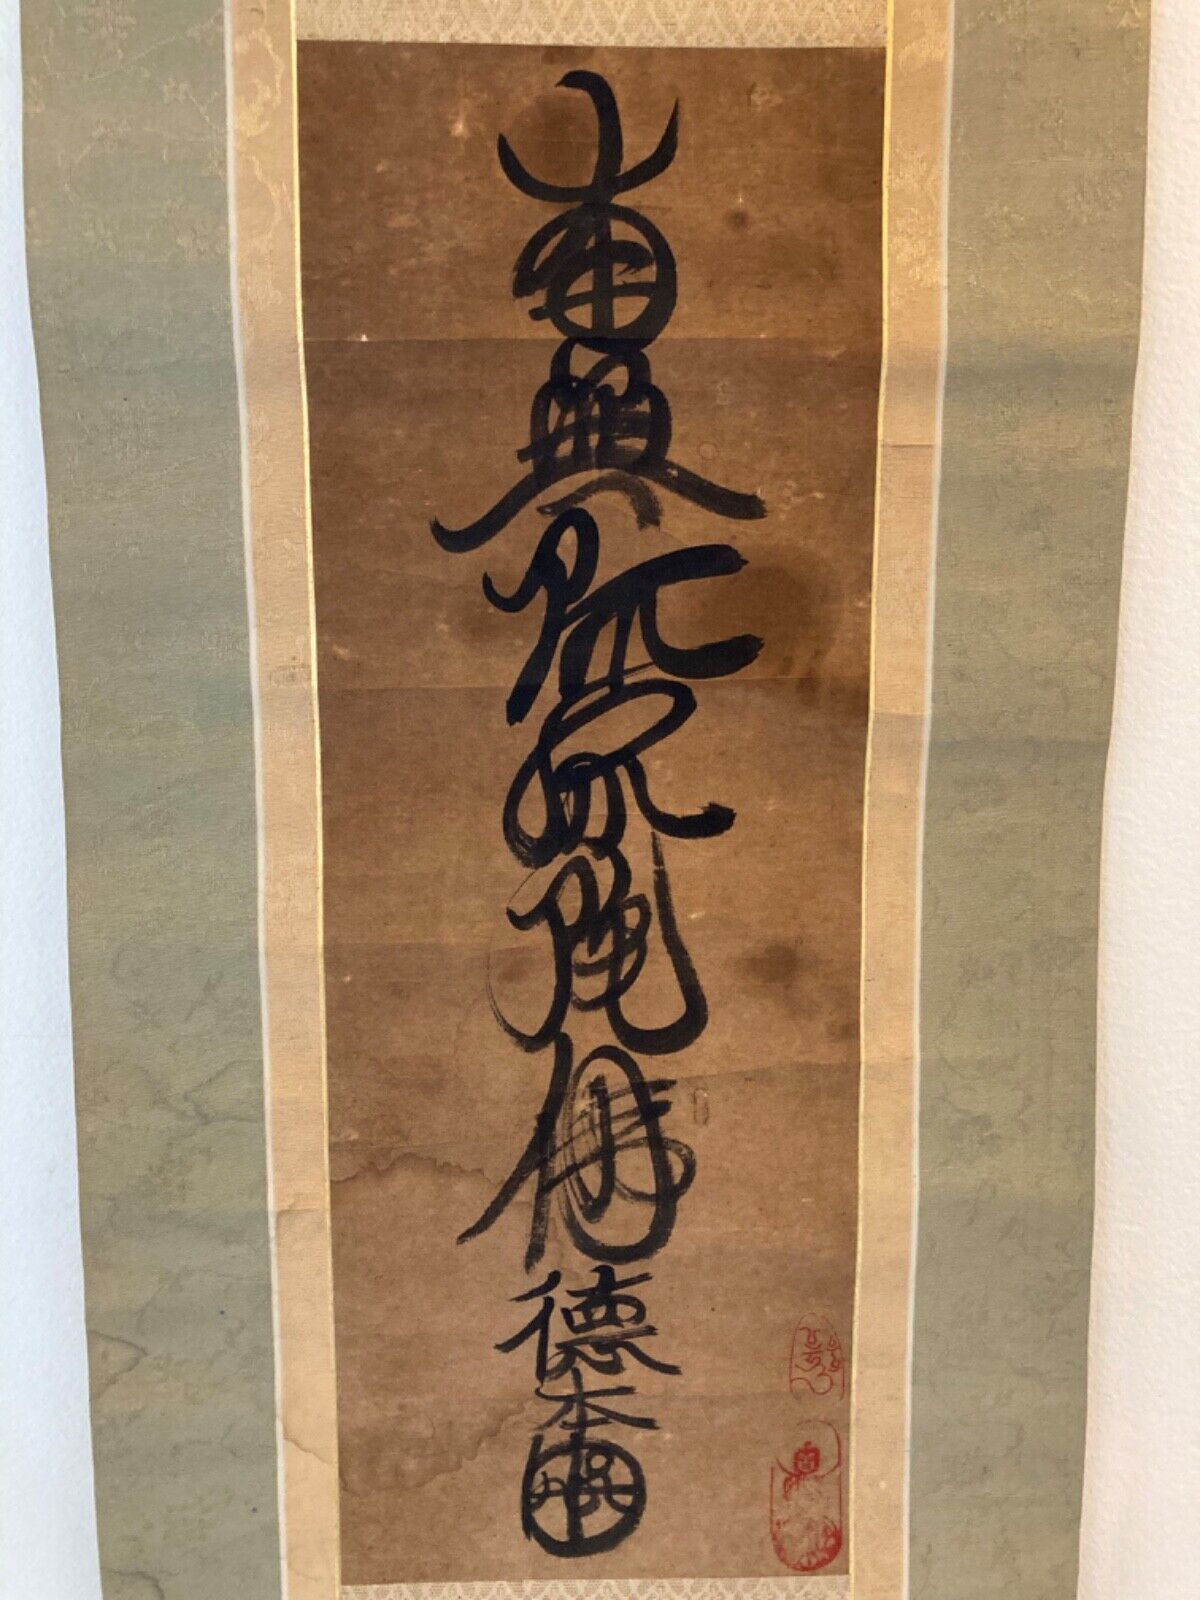 Unique Old Japanese Buddhist Folk Calligraphy Praising Amitabha (Amida) Buddha